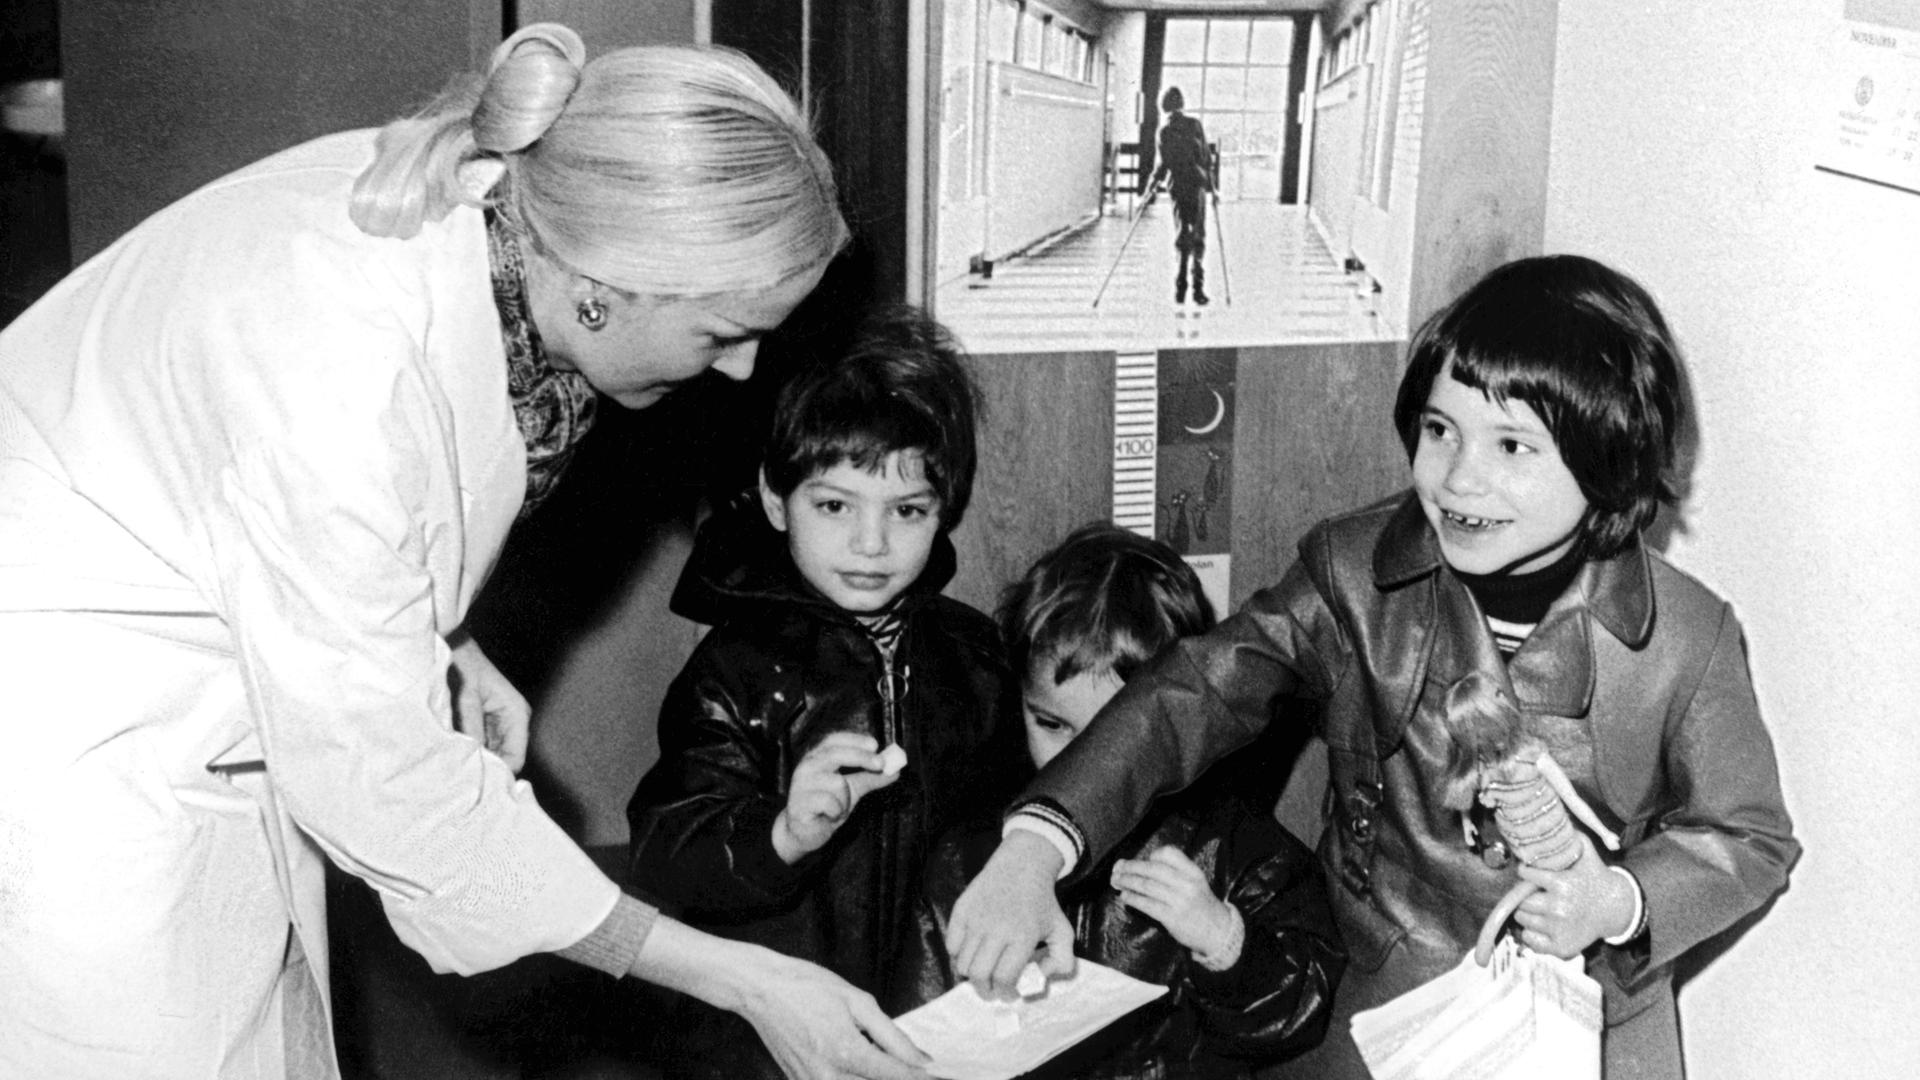 Kinder 1971 vor dem Plakat der bundesweite Impfaktion gegen Kinderlähmung : "Schluckimpfung ist süß, Kinderlähmung ist grausam" 